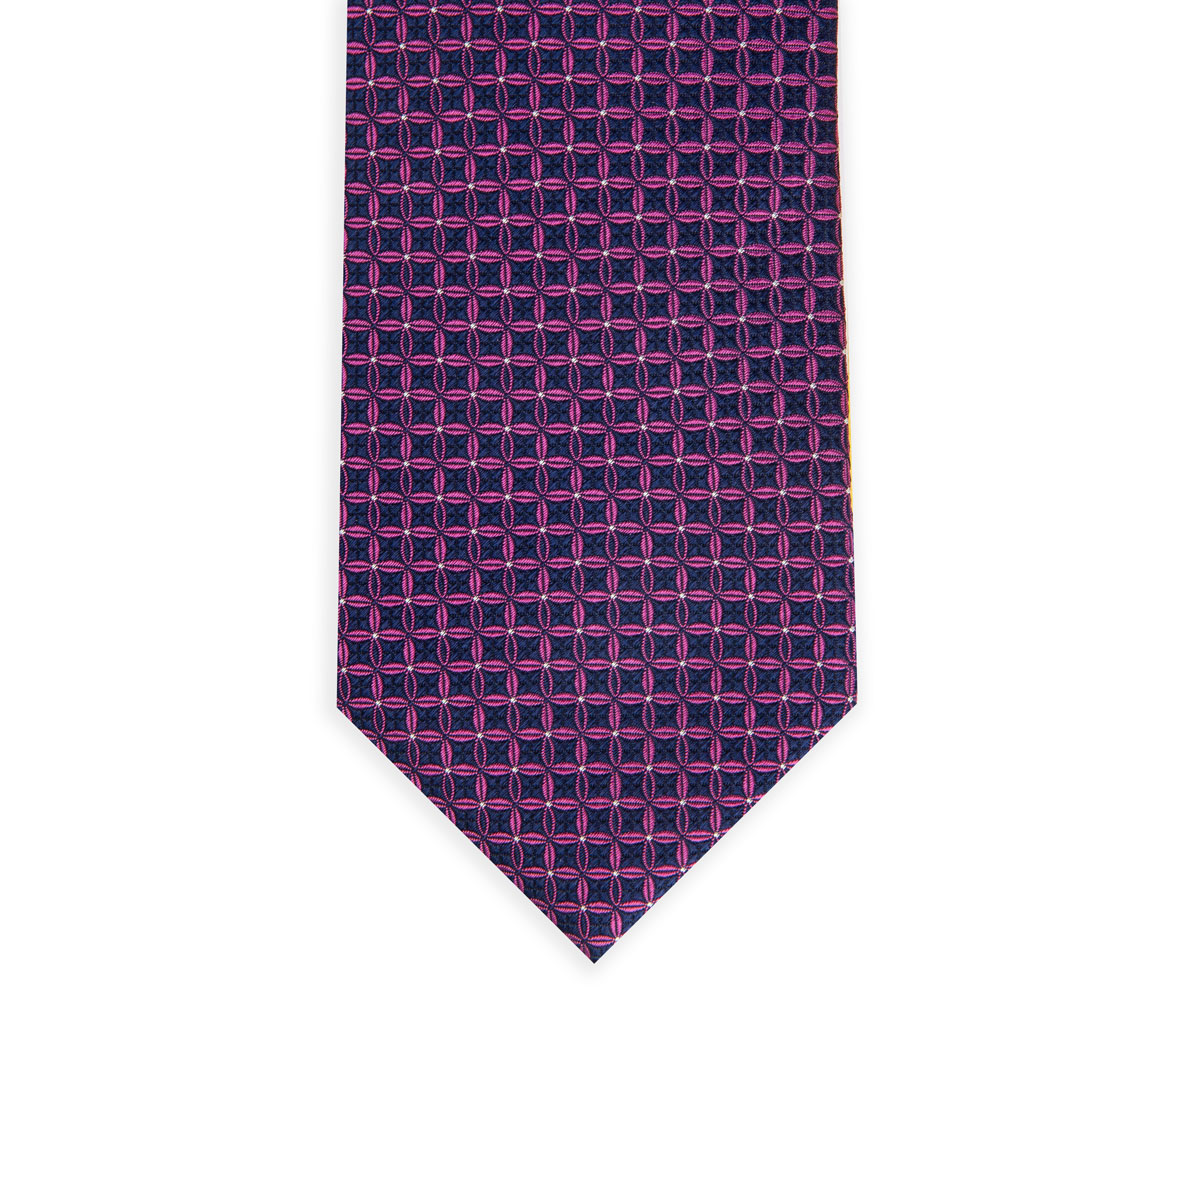 Krawatte glatt mit floralem geometrischem Muster in magenta/blau